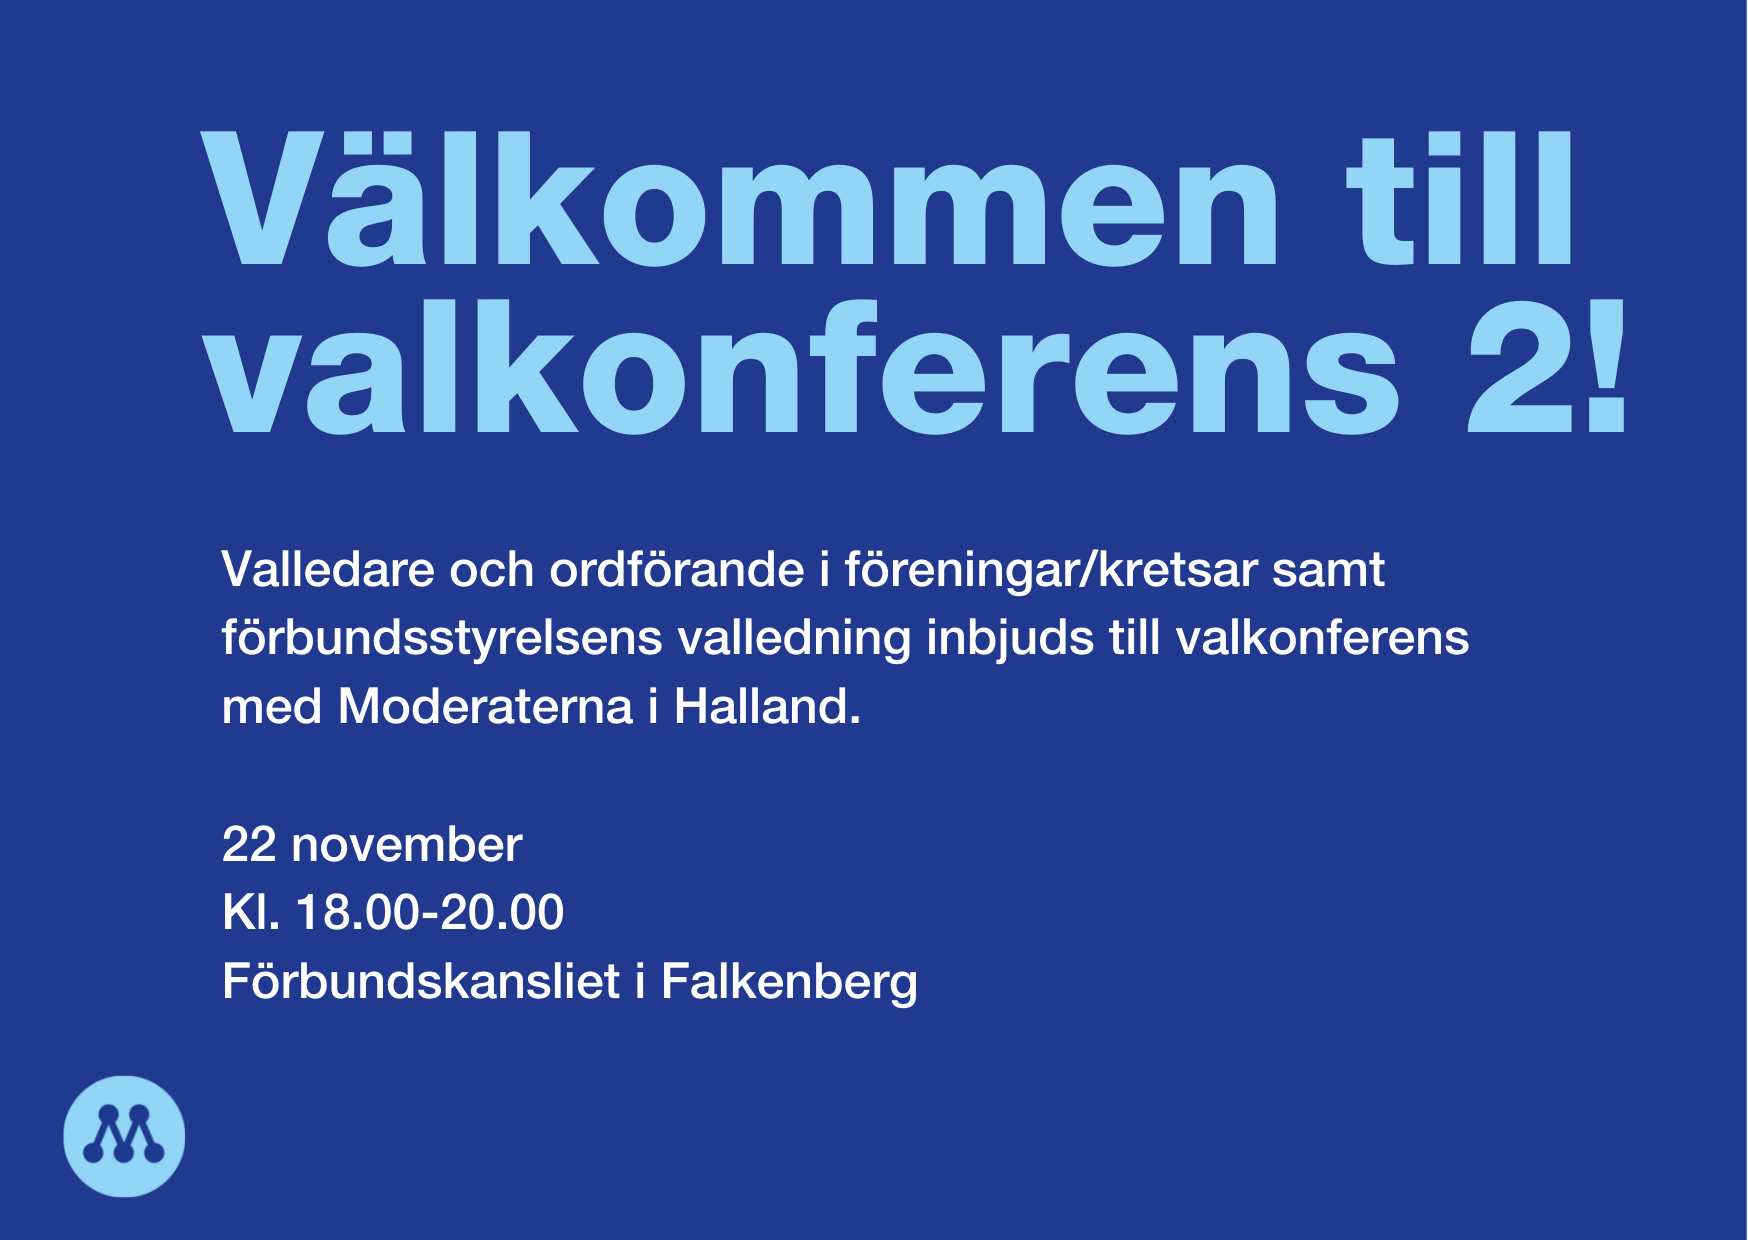 Valkonferens 2 (Falkenberg)